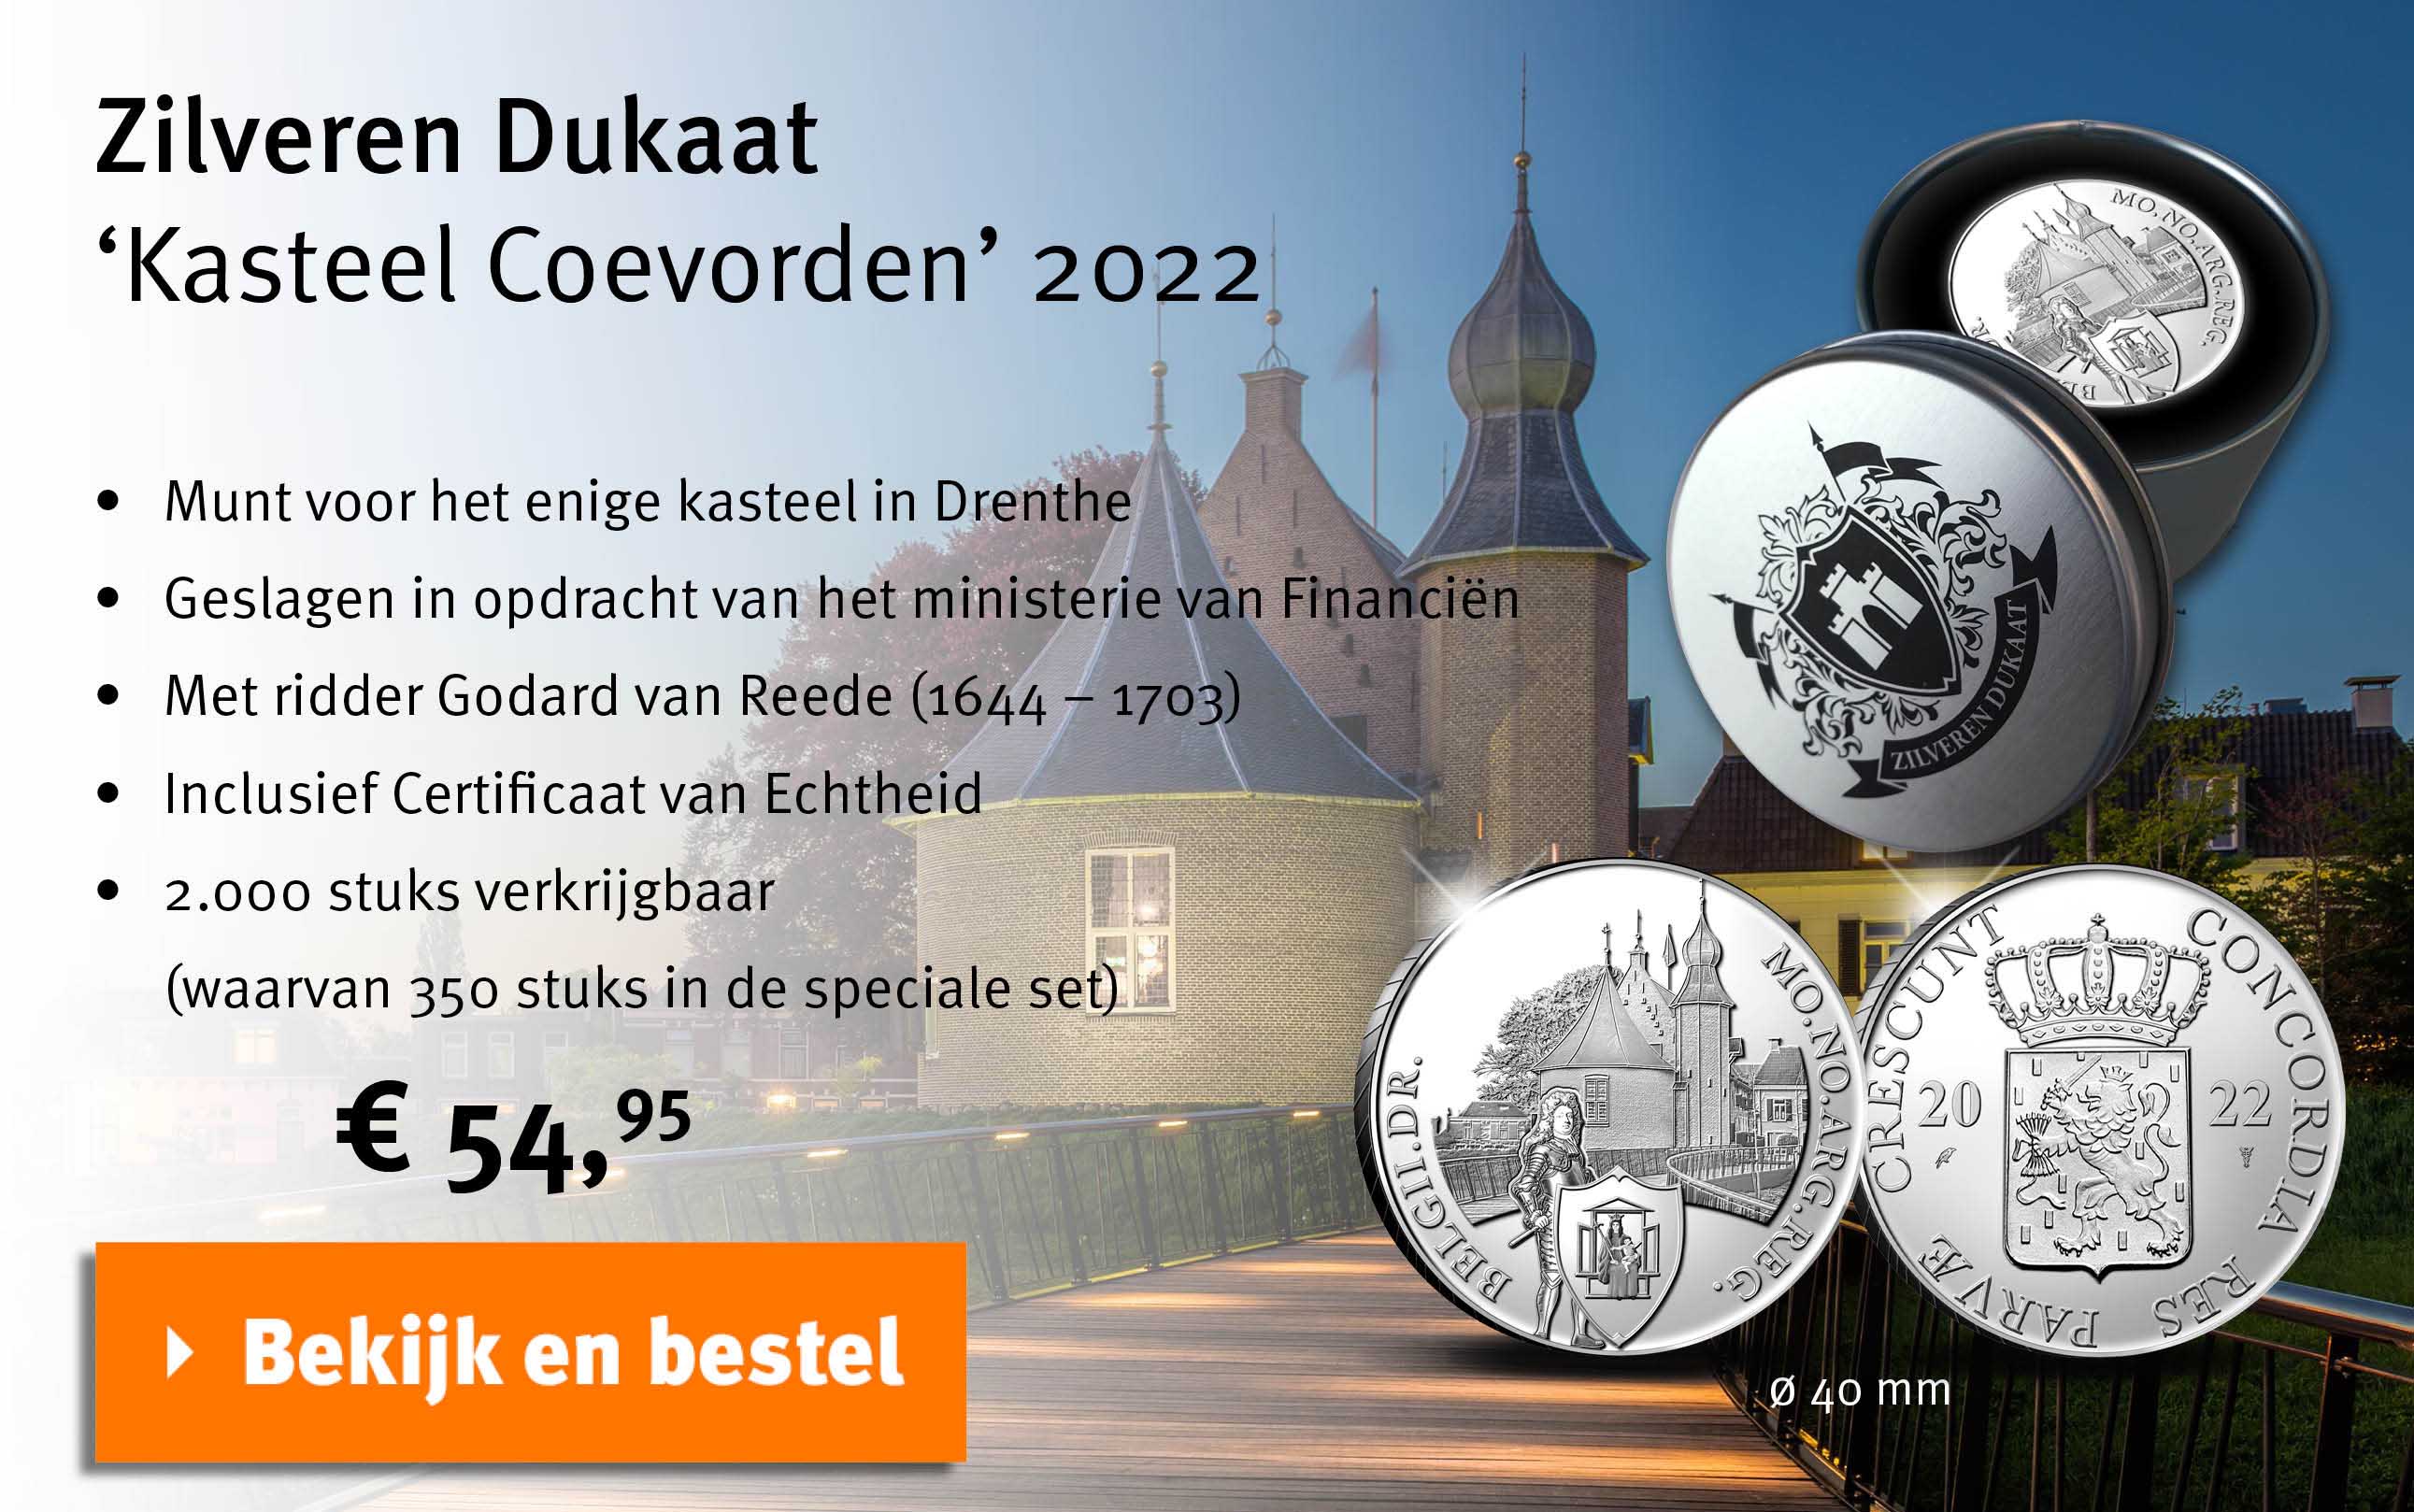 Bekijk en bestel: Zilveren Dukaat - Kasteel Coevorden